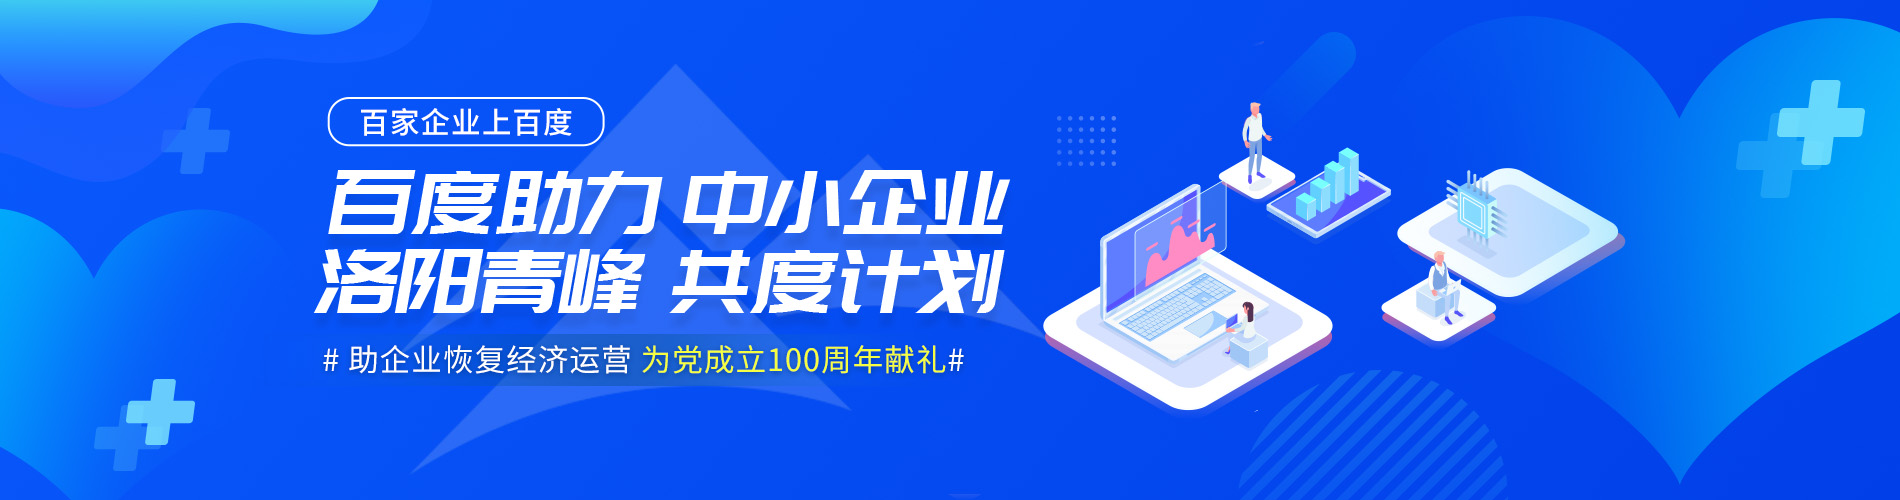 洛阳青峰网络公司企业共度计划